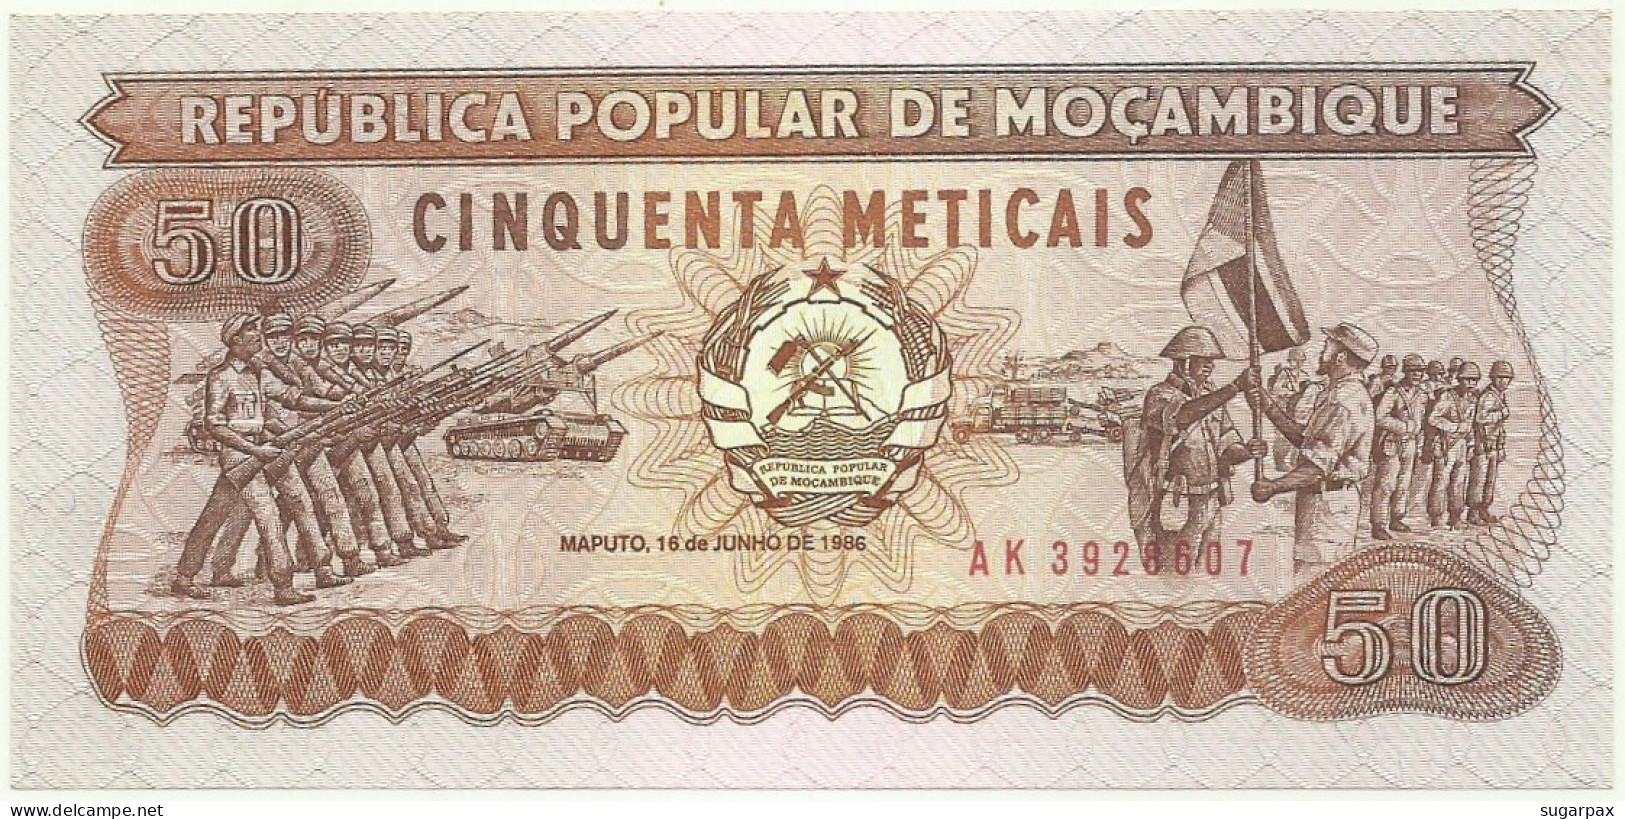 Mozambique - 50 Meticais - 16.06.1986 - Unc. - P 129.b - Serie AK - Mozambique